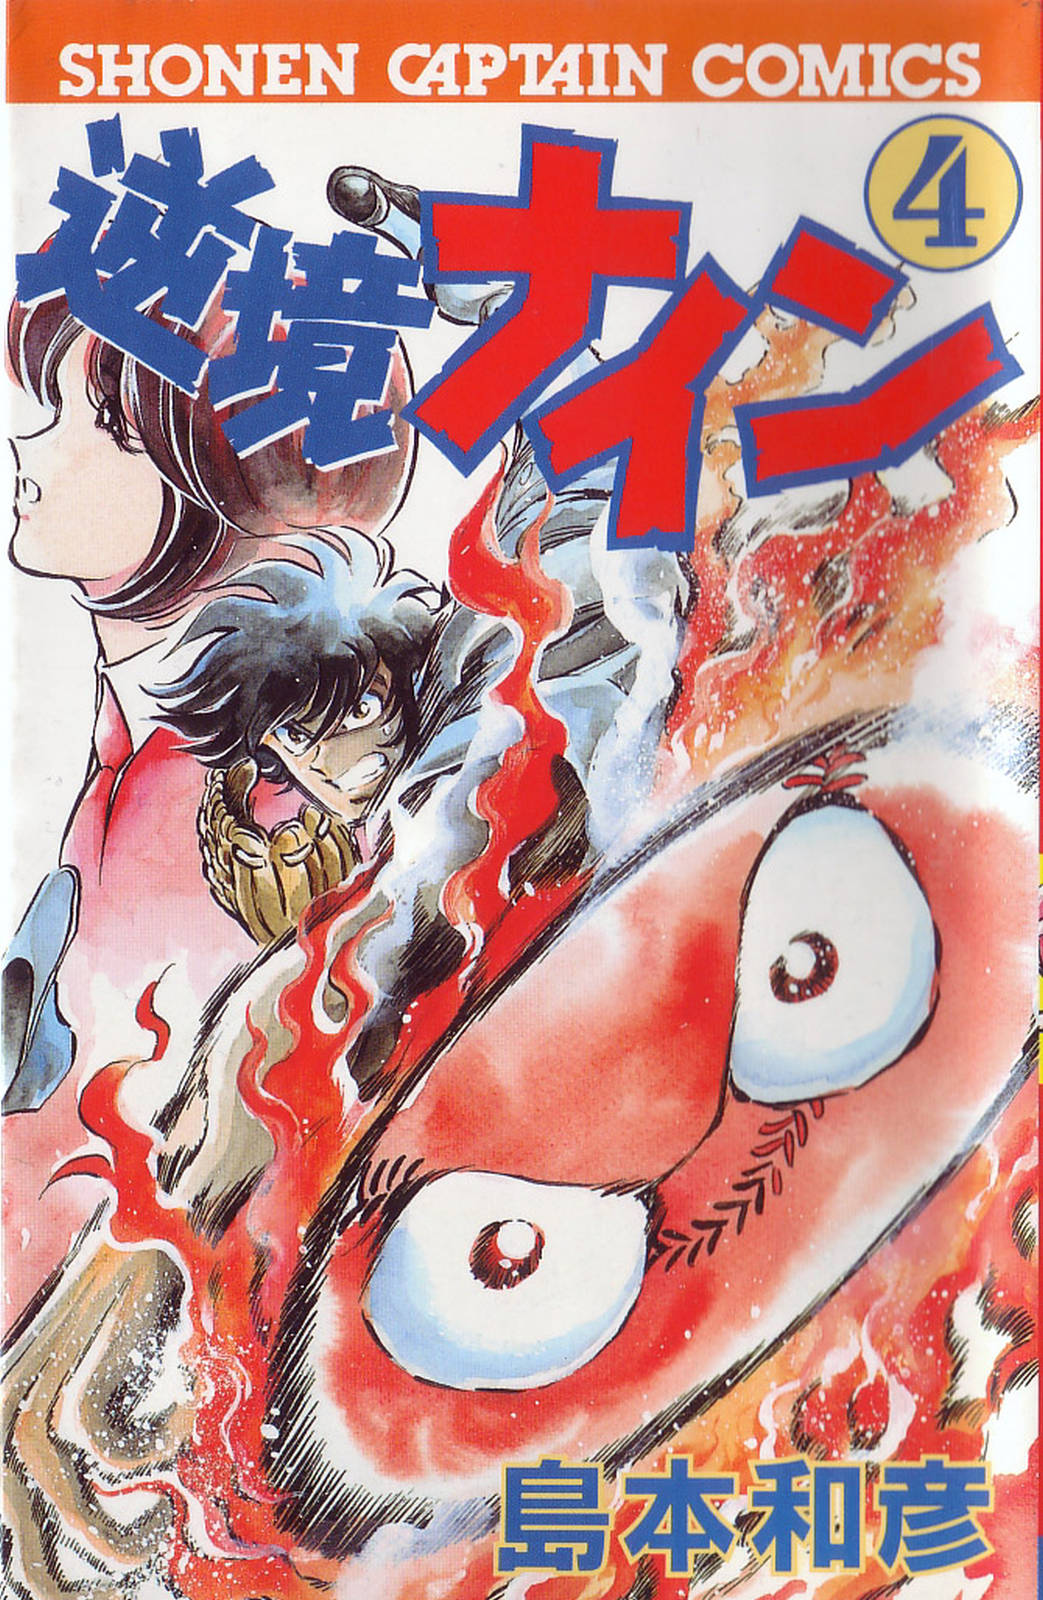 Gyakkyou Nine volumes 3 & 4 manga review